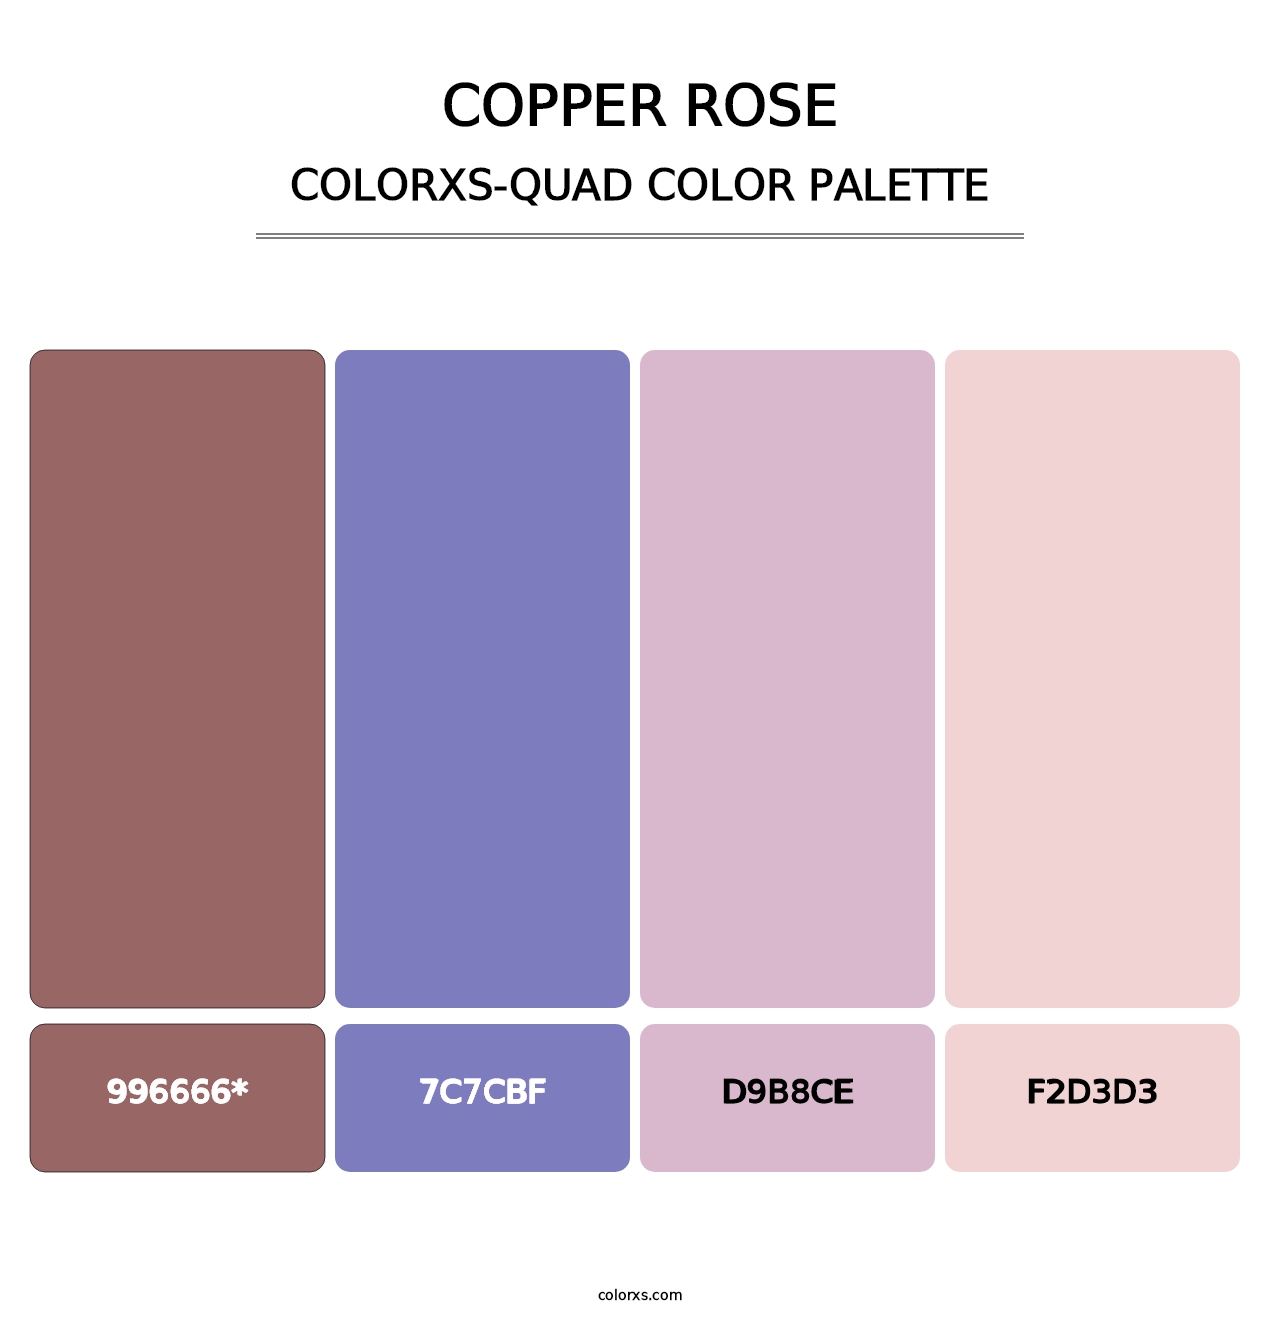 Copper rose - Colorxs Quad Palette